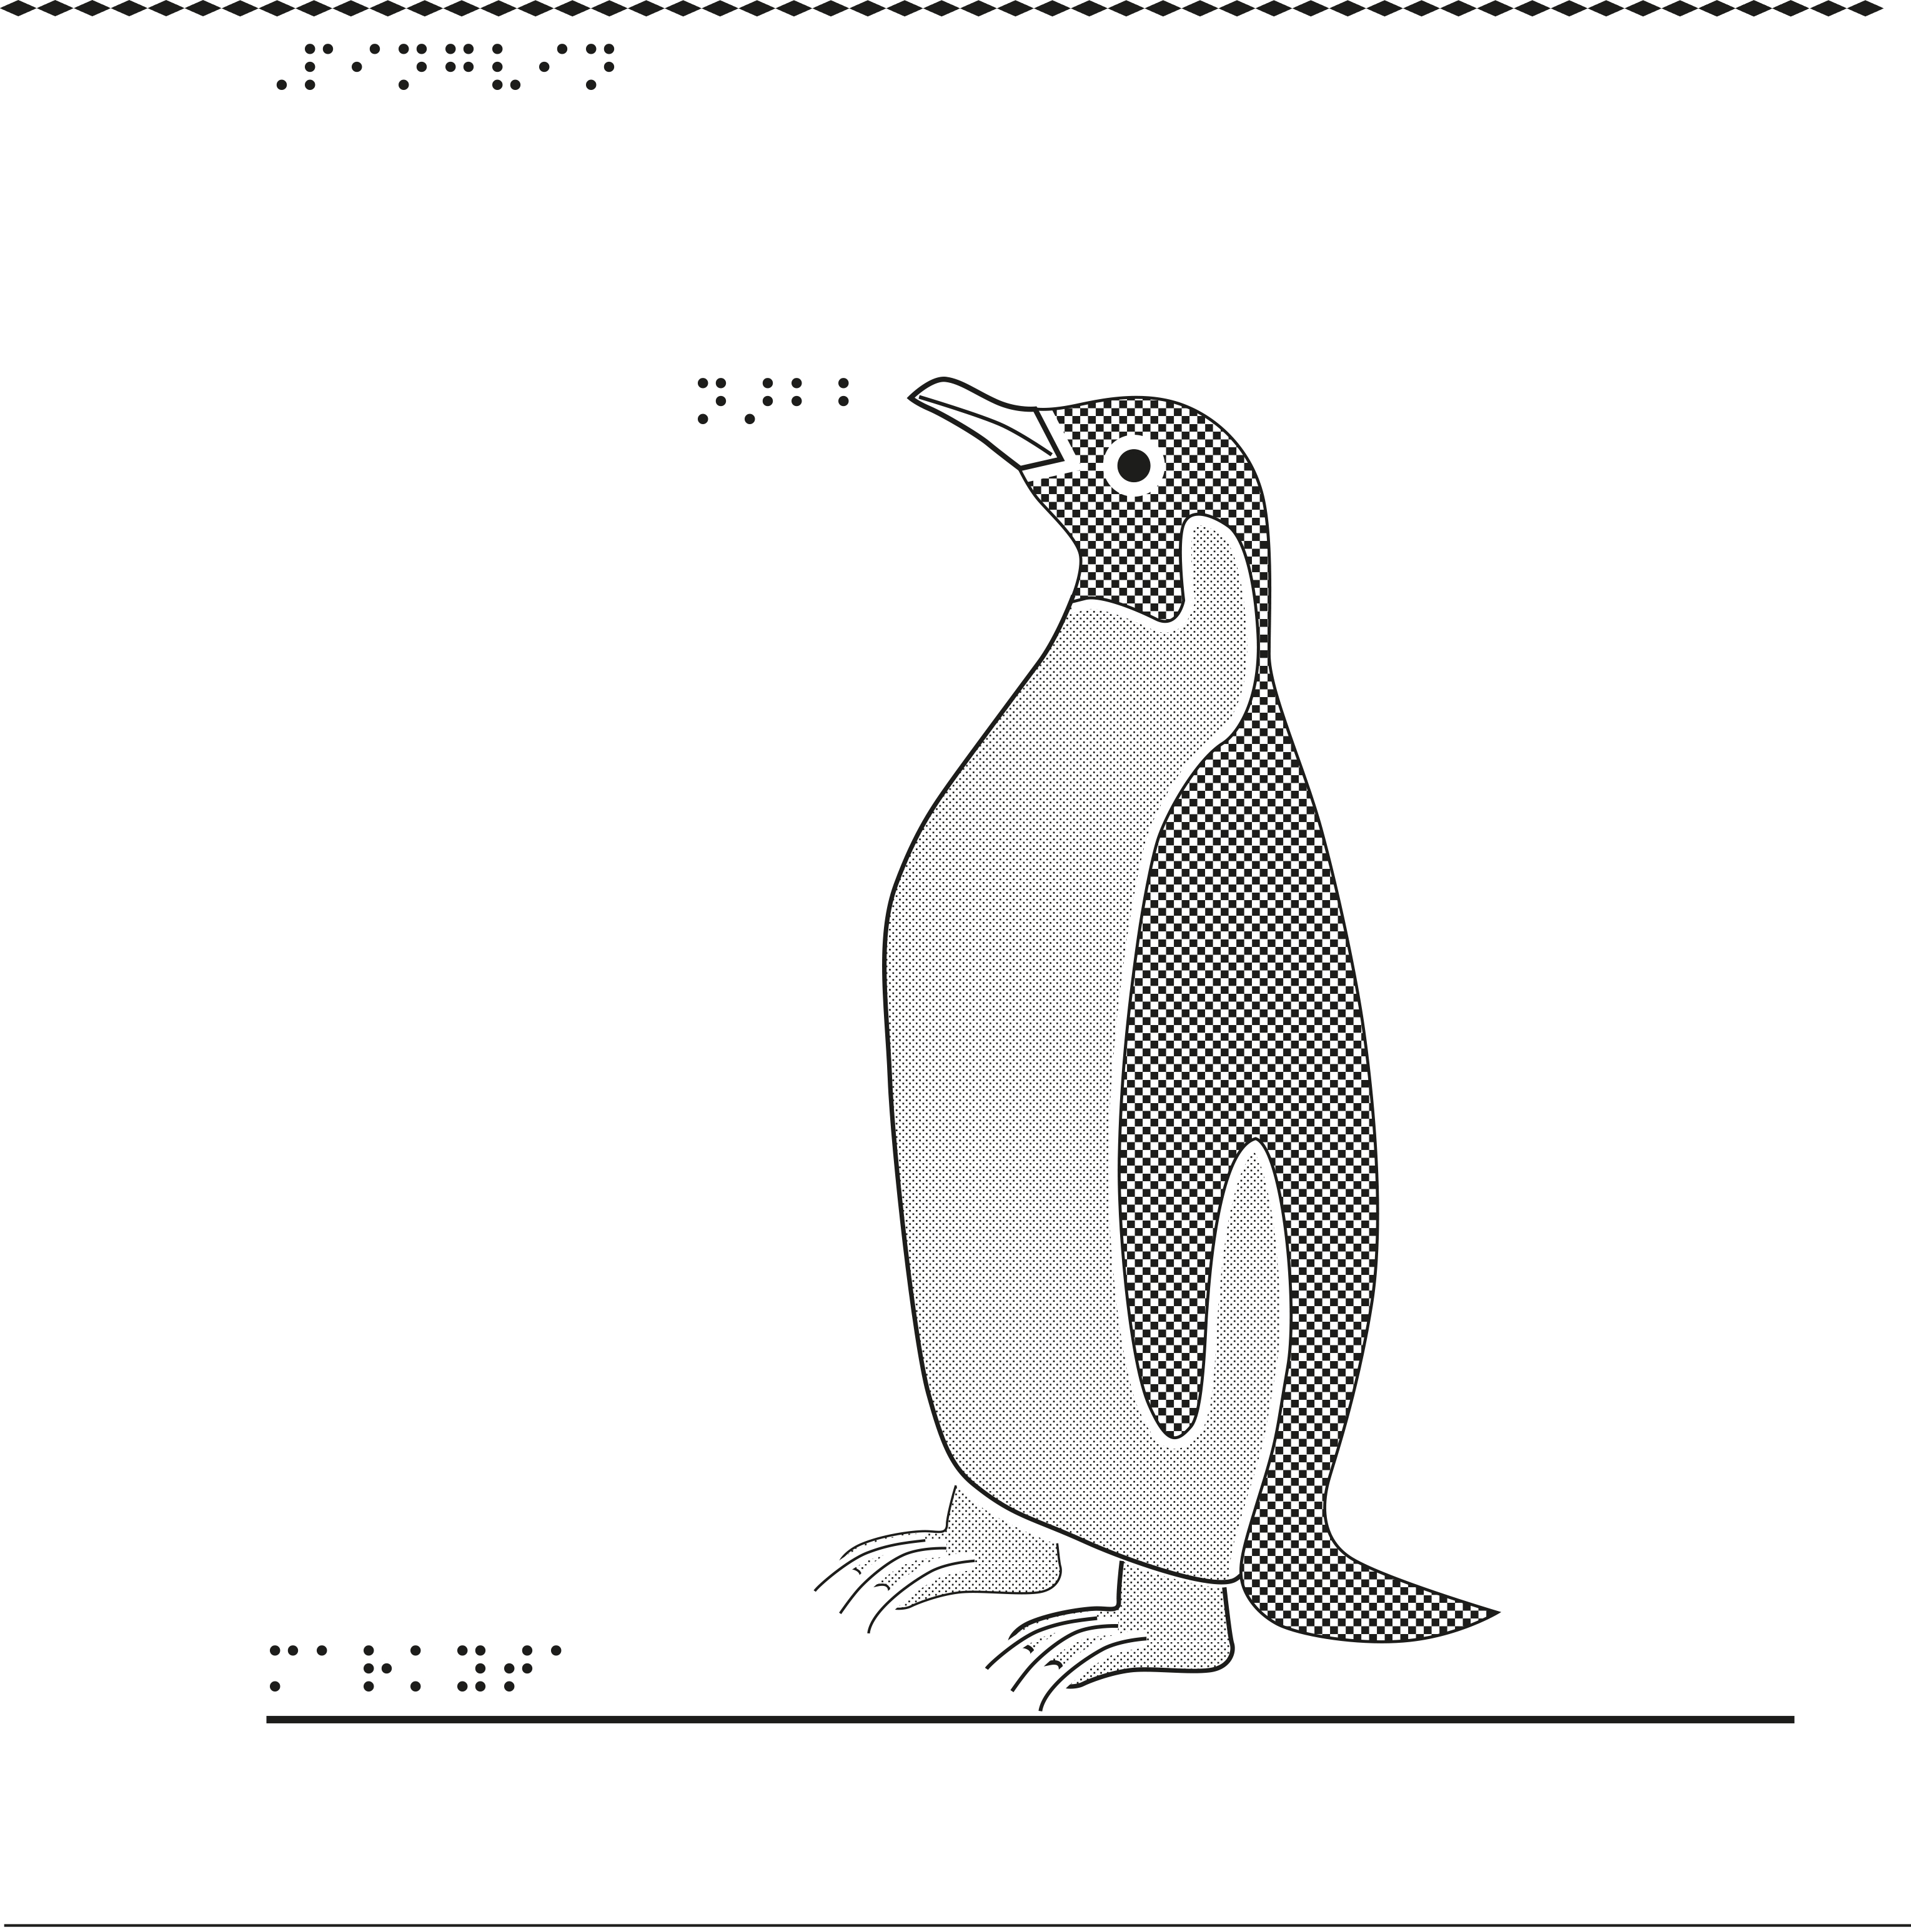 Taktil bild på en pingvin.